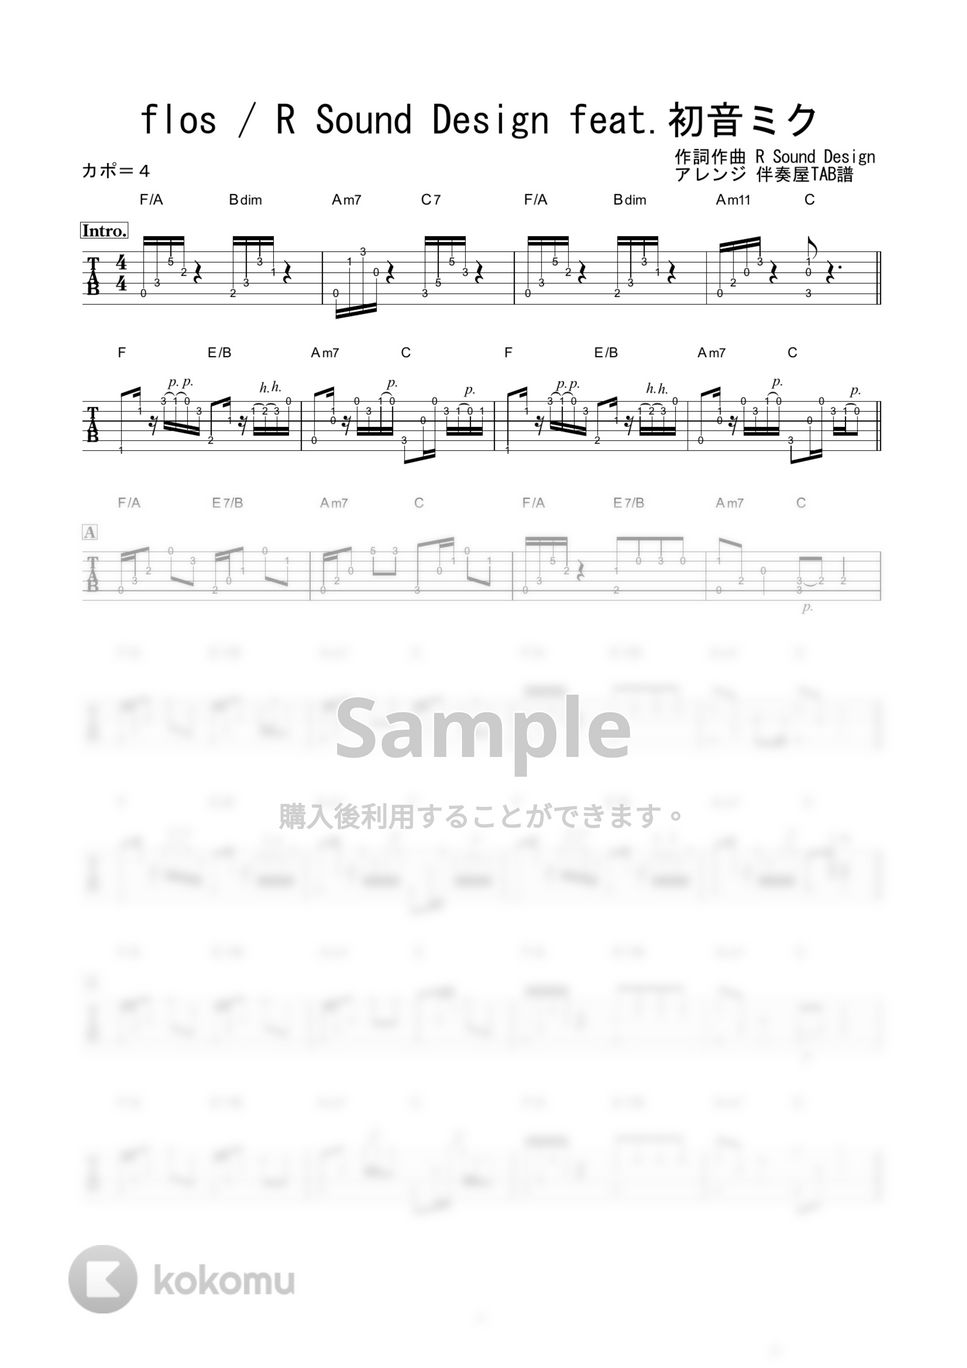 R Sound Design - flos (ソロギター) by 伴奏屋TAB譜